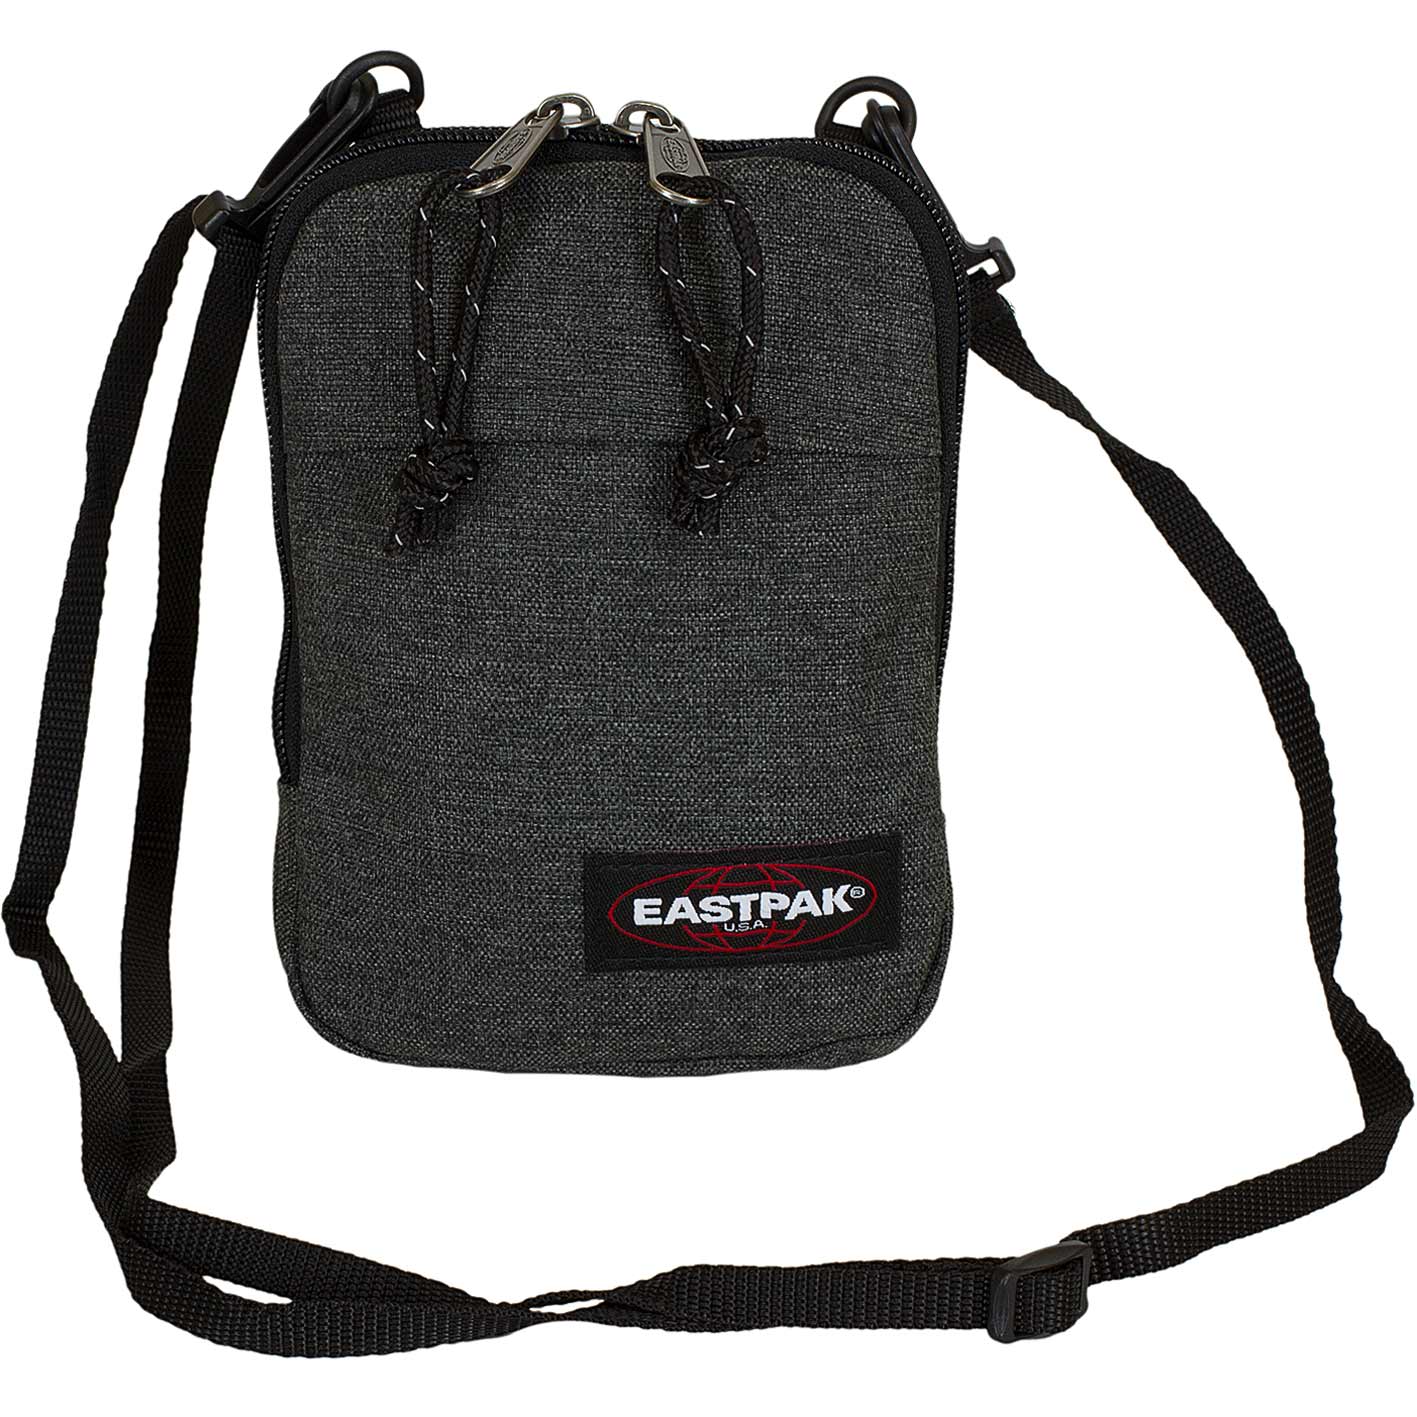 ☆ Eastpak Mini Tasche Buddy schwarz denim - hier bestellen!